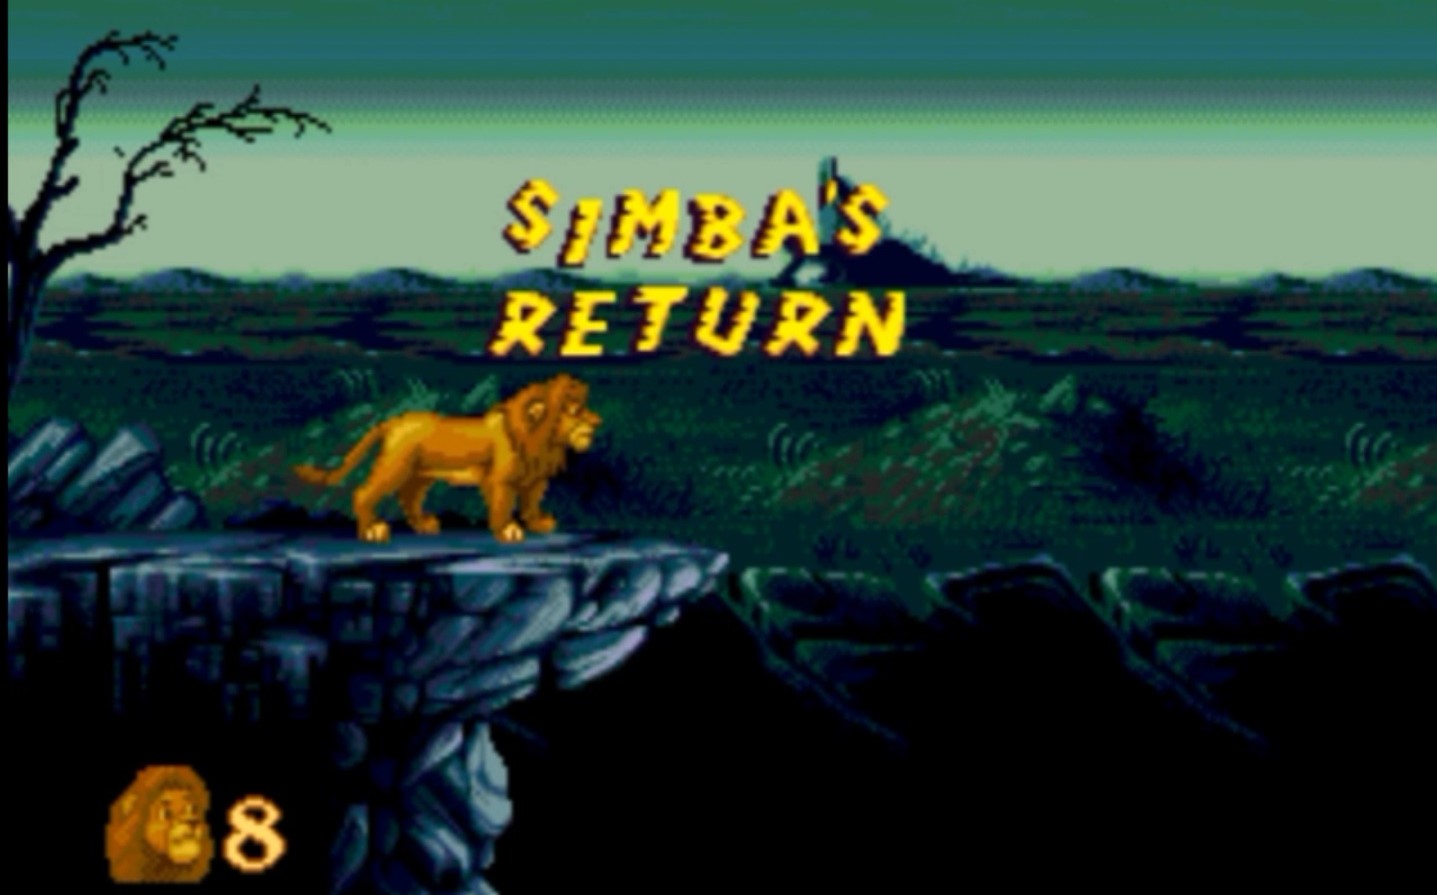 Sega Mega Drive 2 (Smd) 16-bit The Lion King 1 Level 9 Simba's Return Прохождение